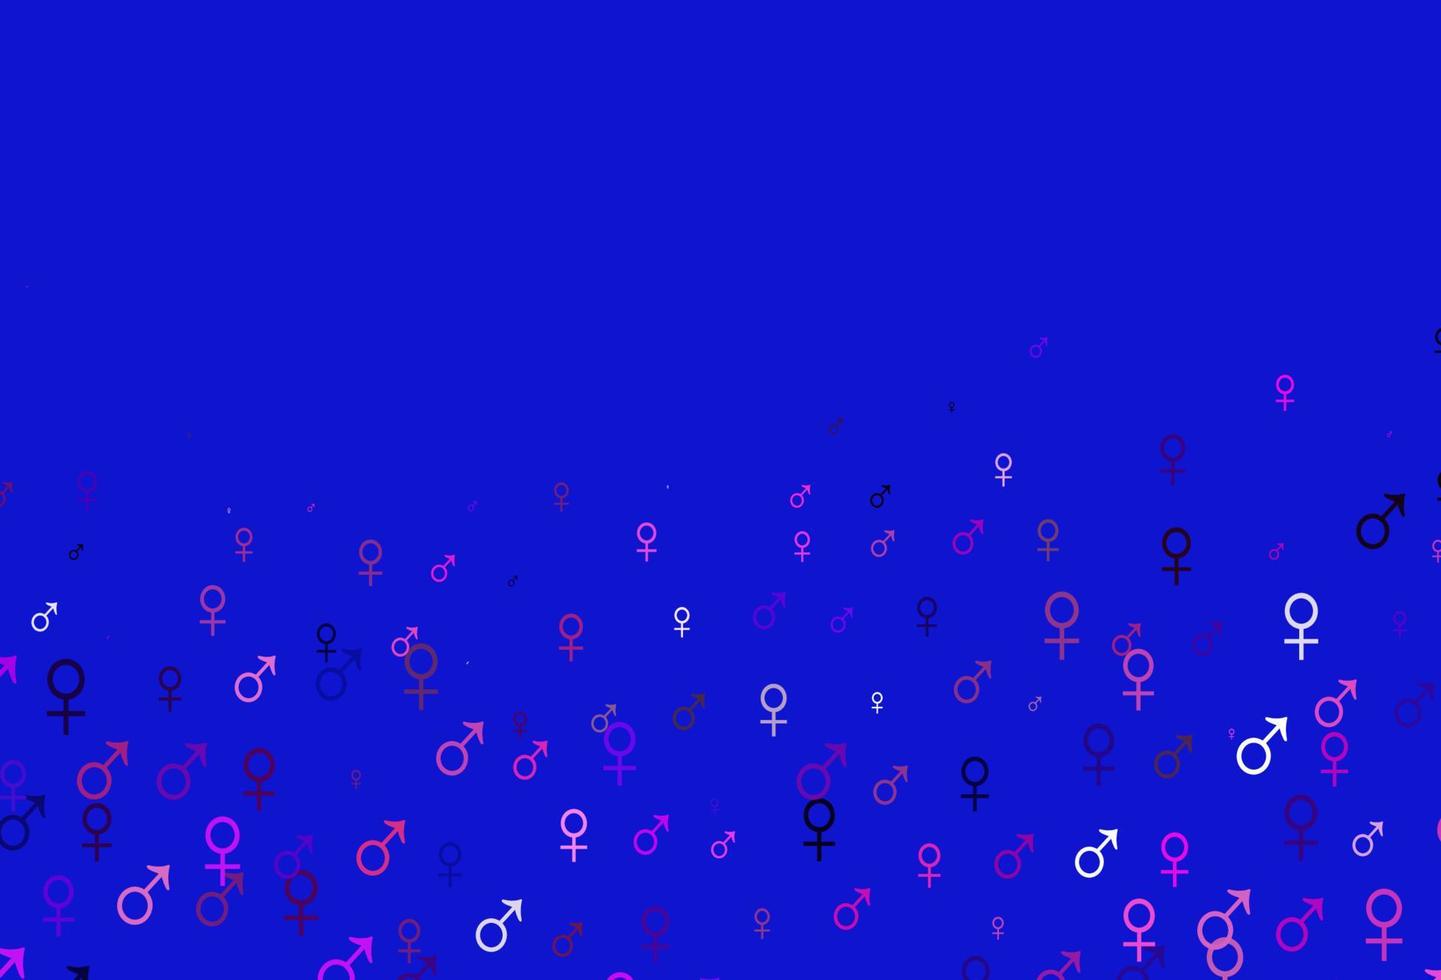 ljusrosa, blå vektorbakgrund med könssymboler. vektor